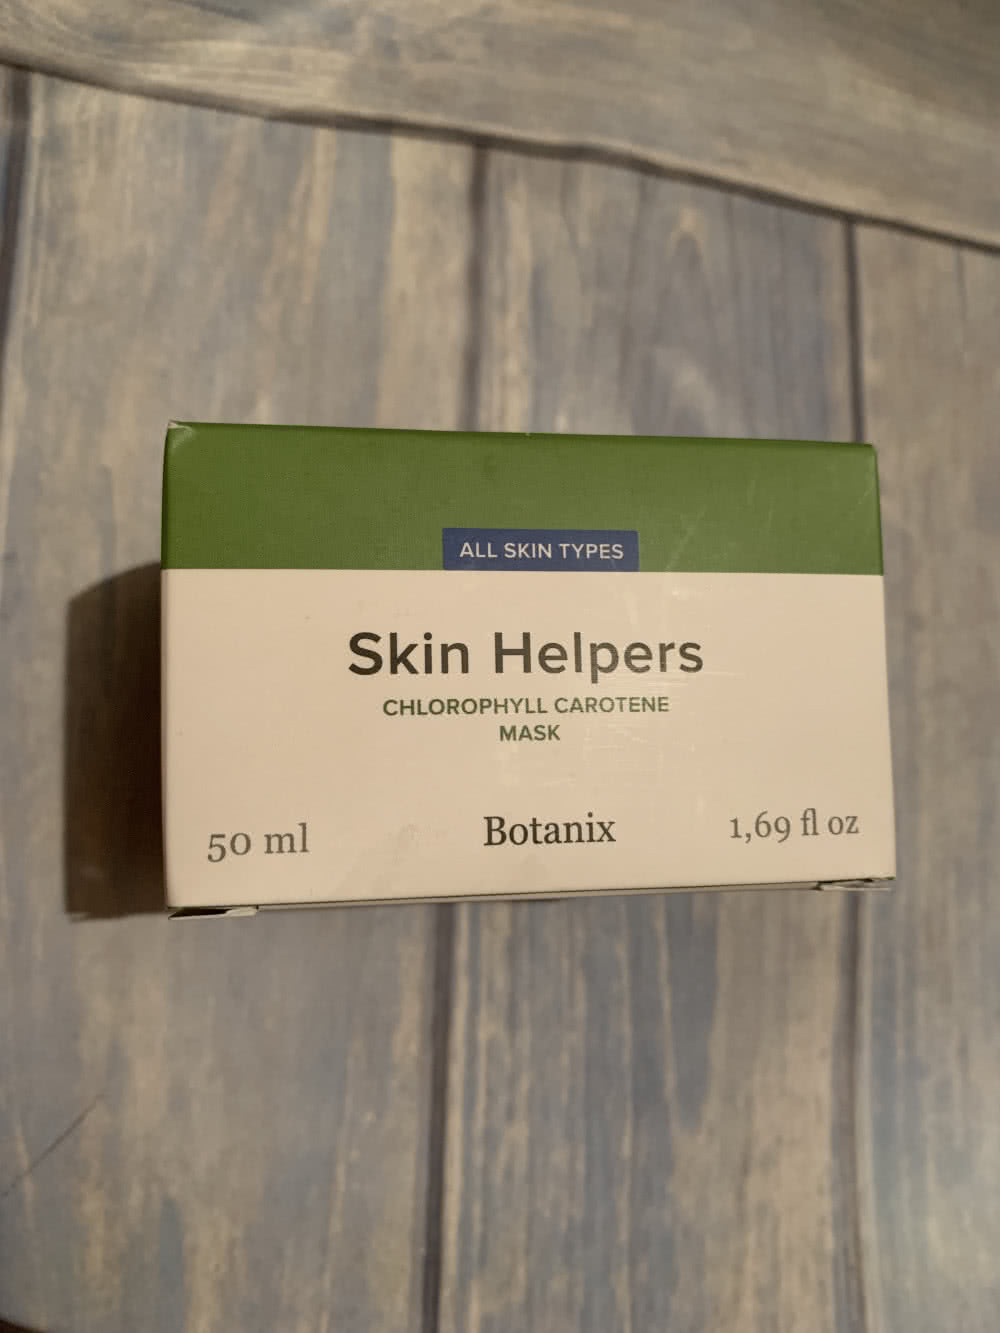 Skin Helpers, Chlorophyll-carotene Mask, 50ml